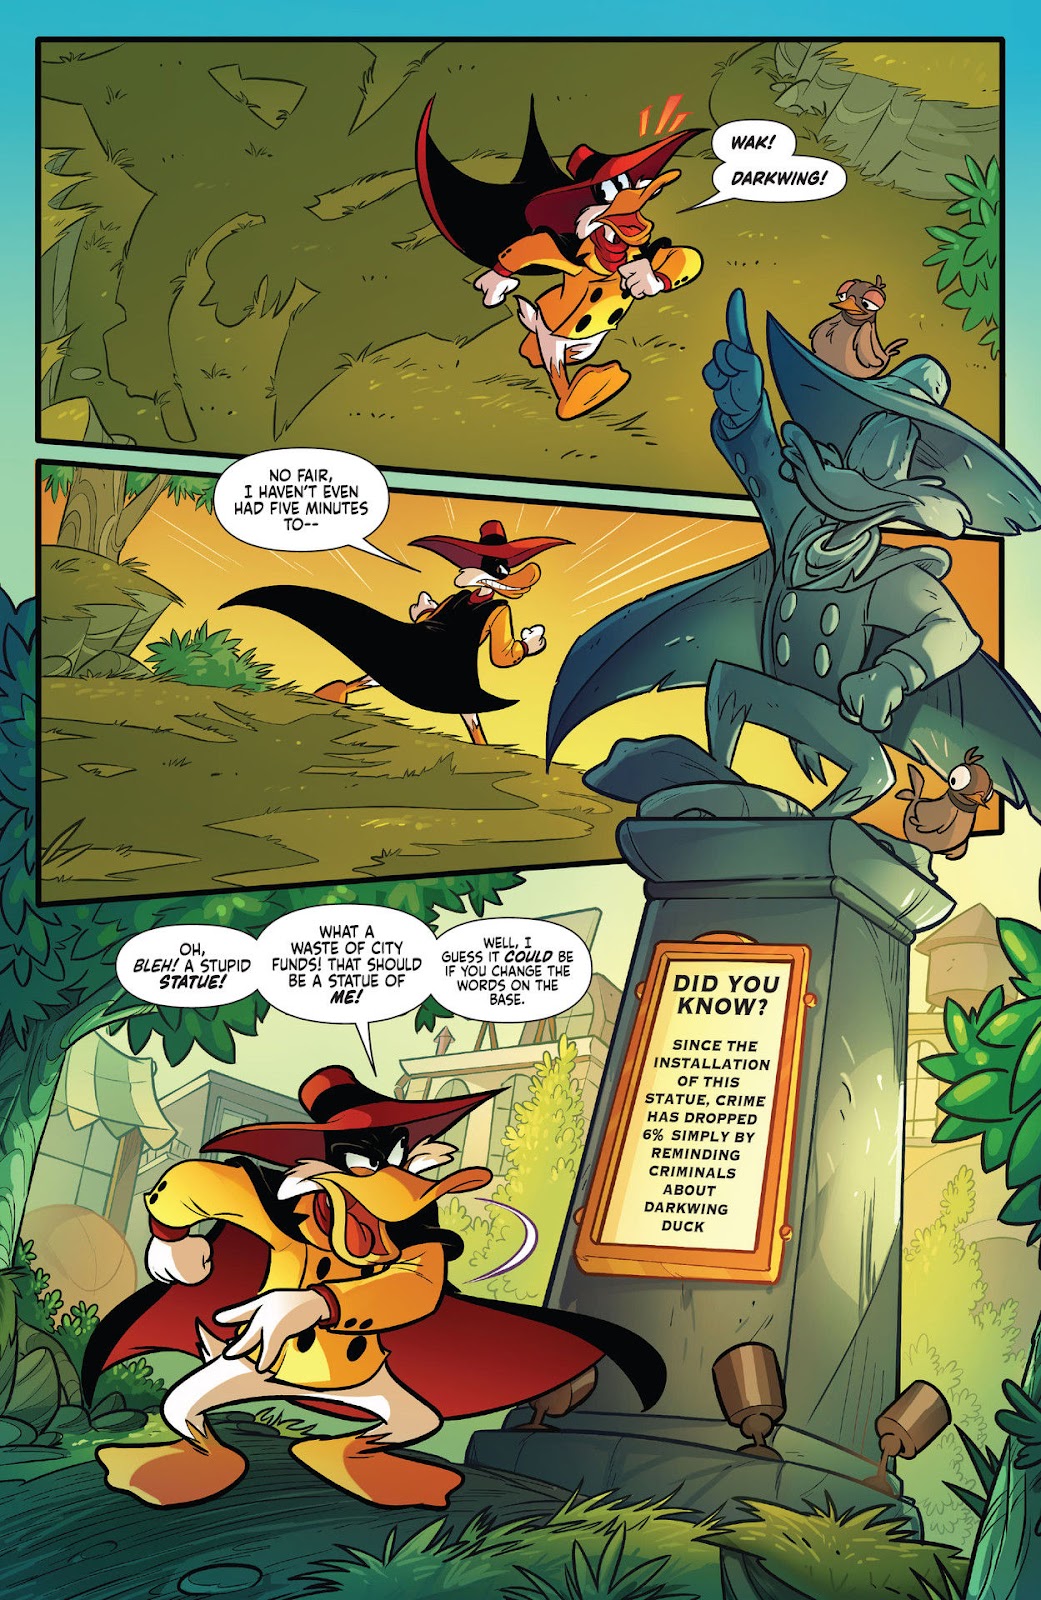 Darkwing Duck: Negaduck issue 1 - Page 10